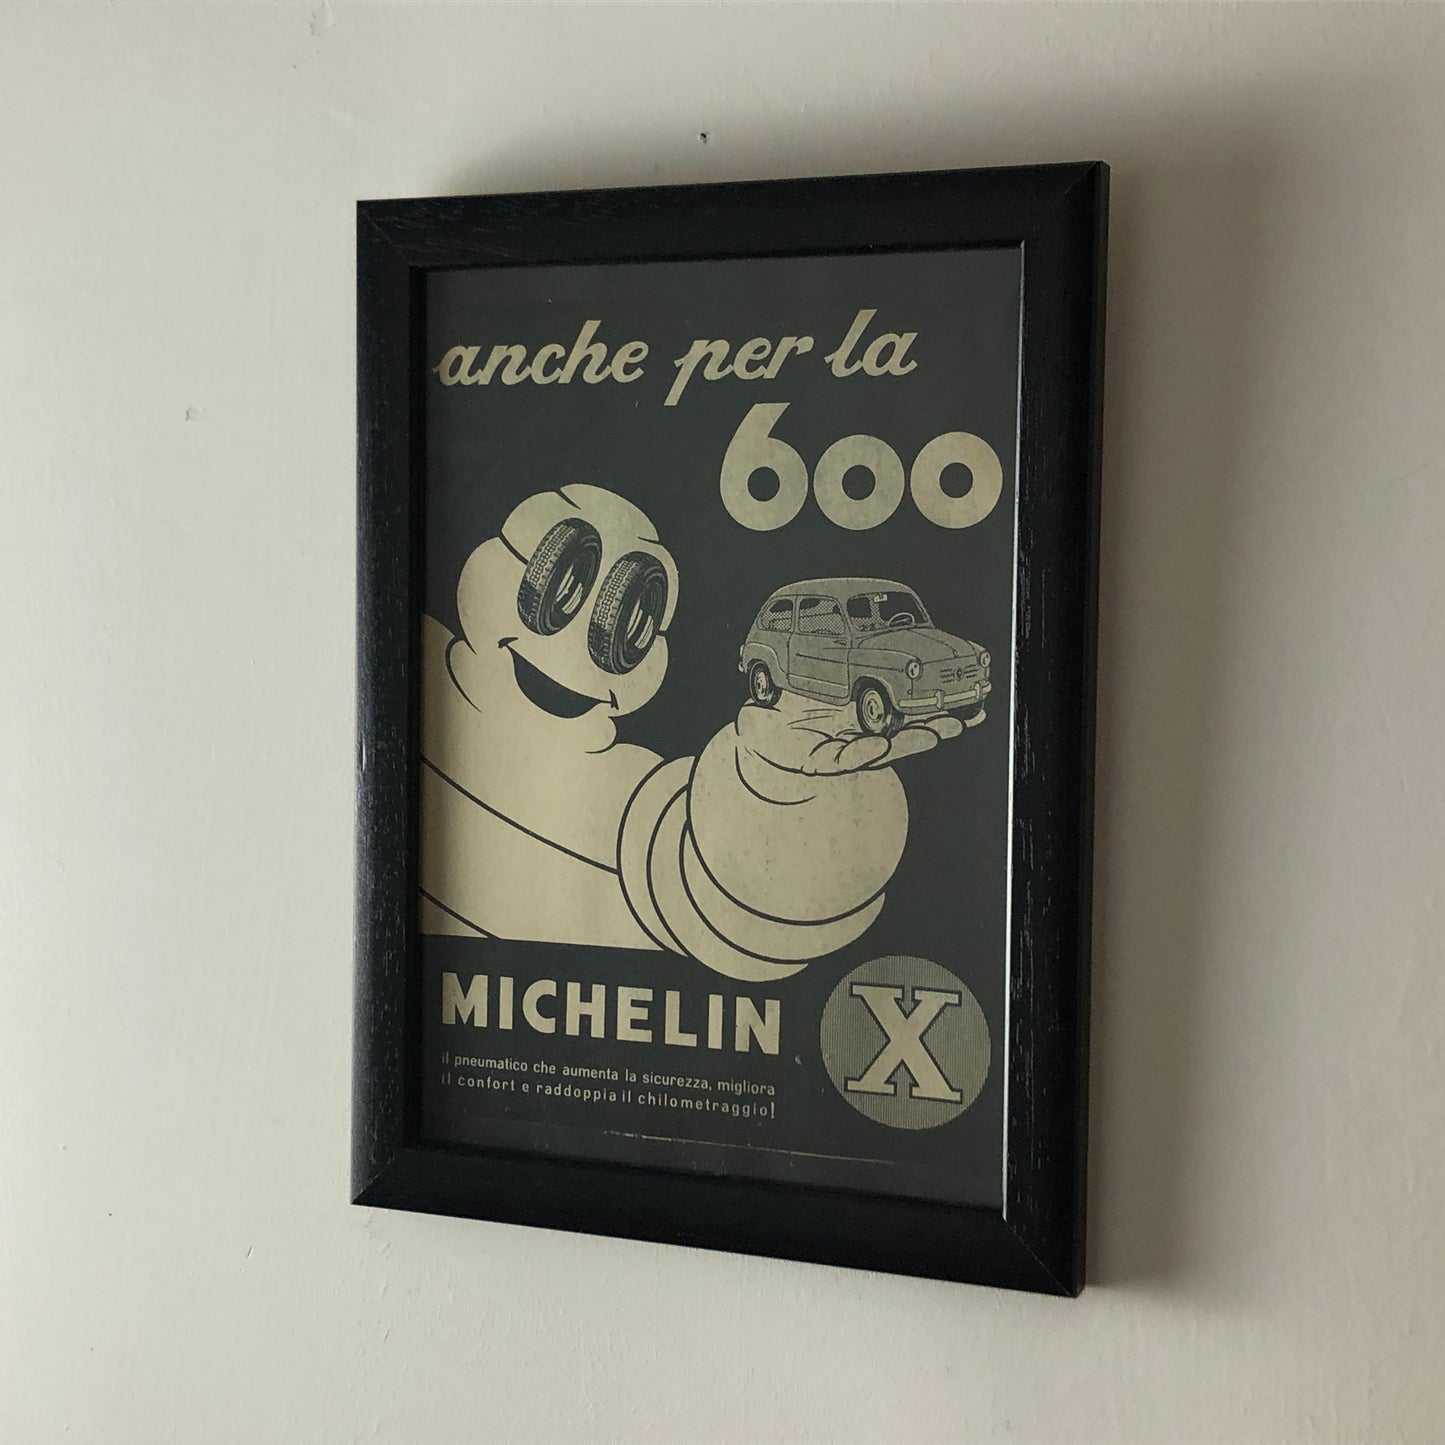 Michelin, Pubblicità Anno 1960 Pneumatici Michelin X per Fiat 600 con Didascalia in Italiano